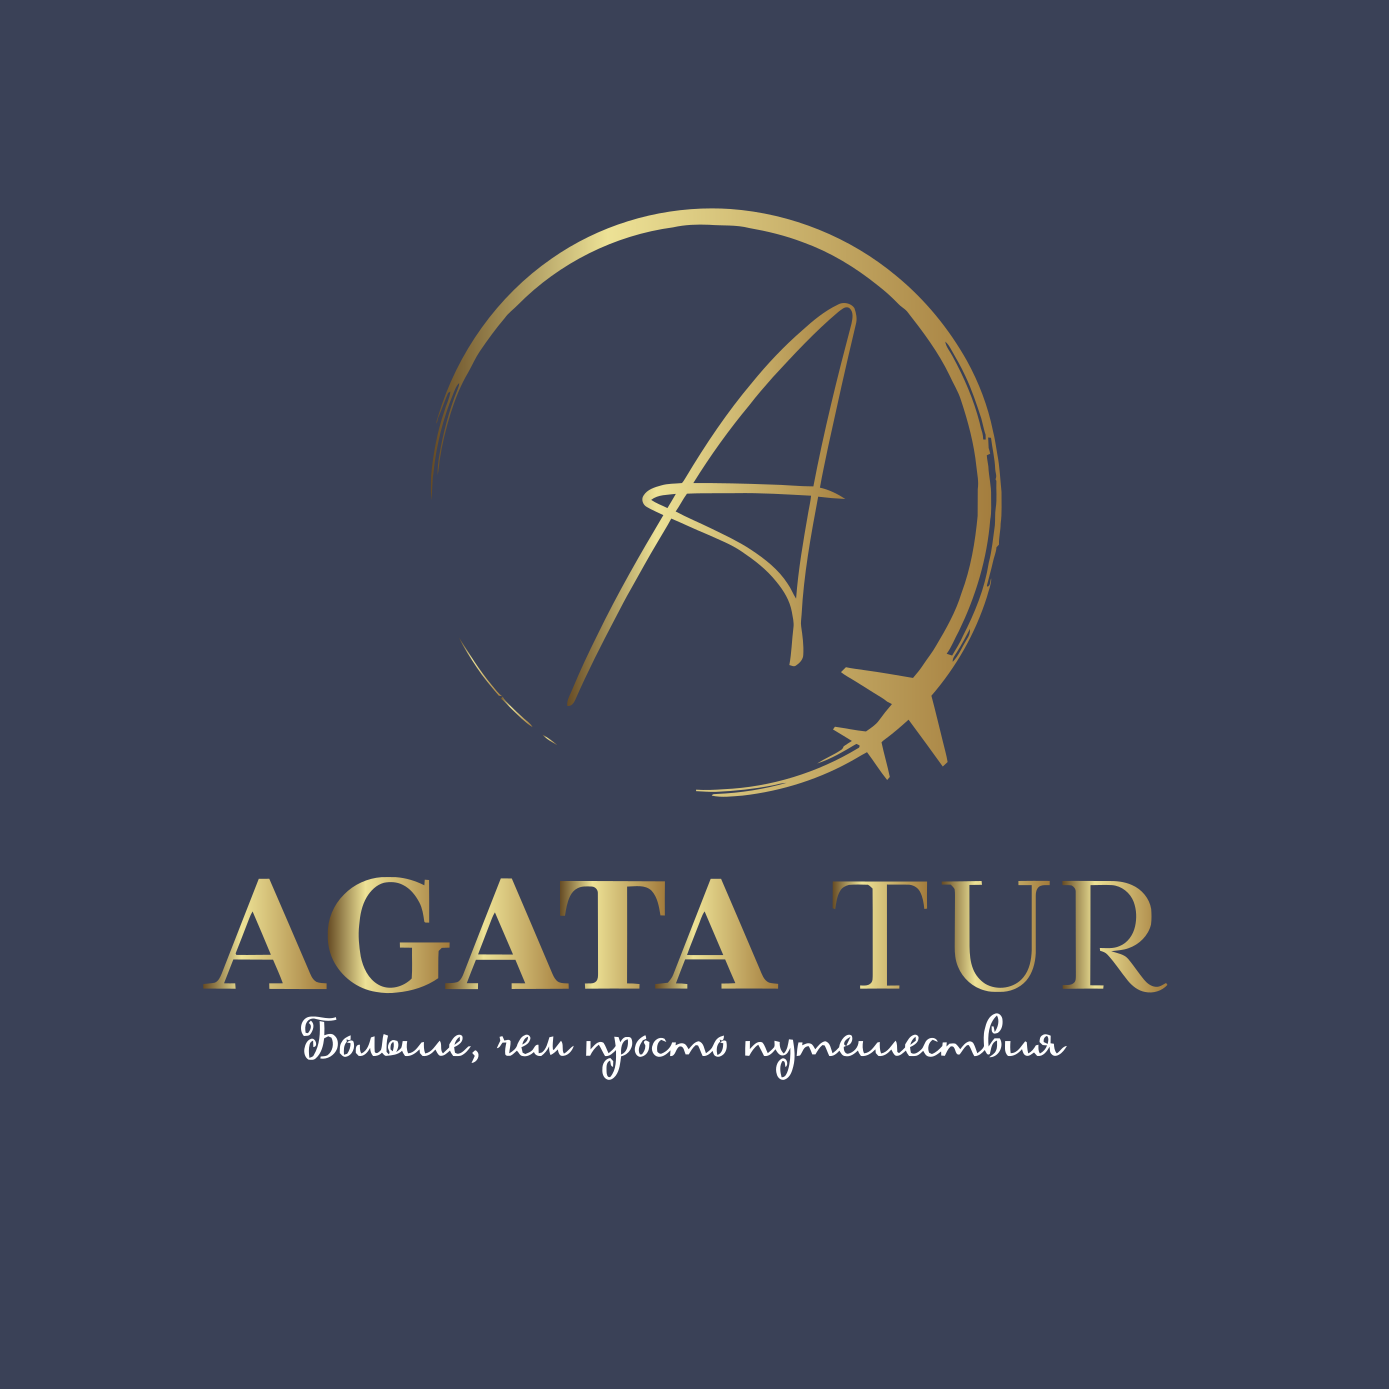 Agata Tour